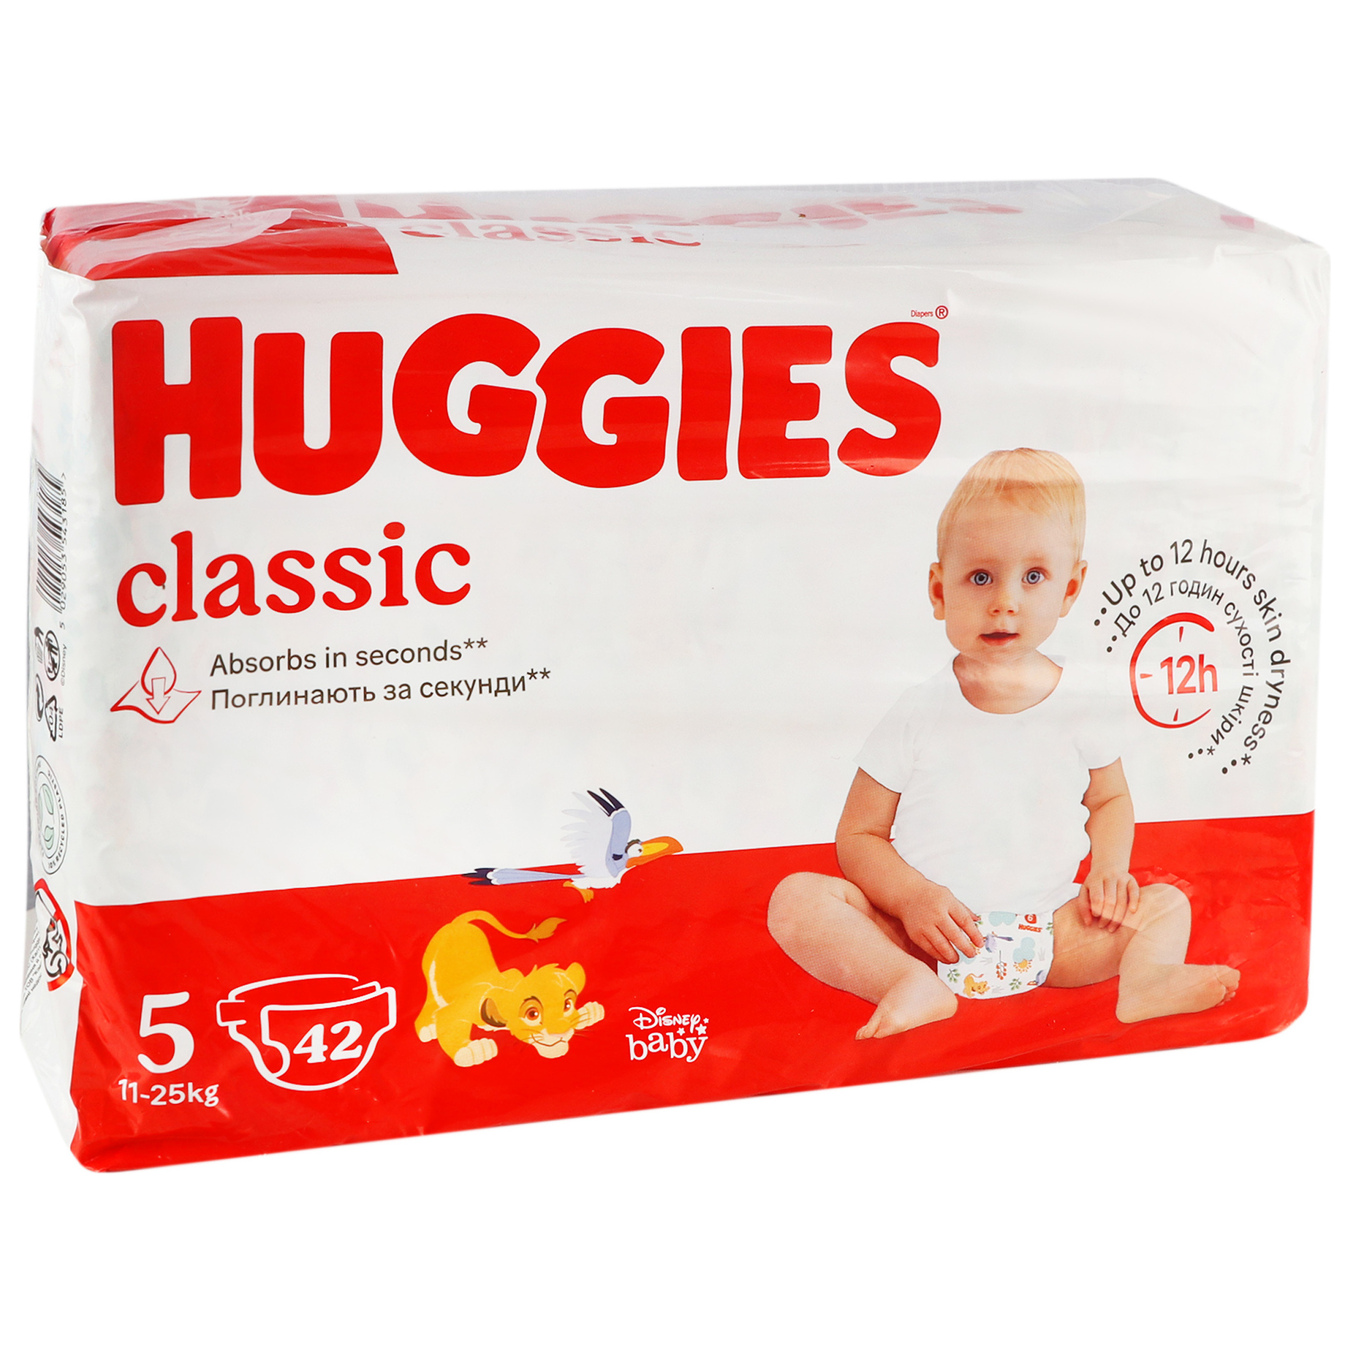 Подгузники Huggies Classic Jumbo 5р. 11-25кг 42шт 2